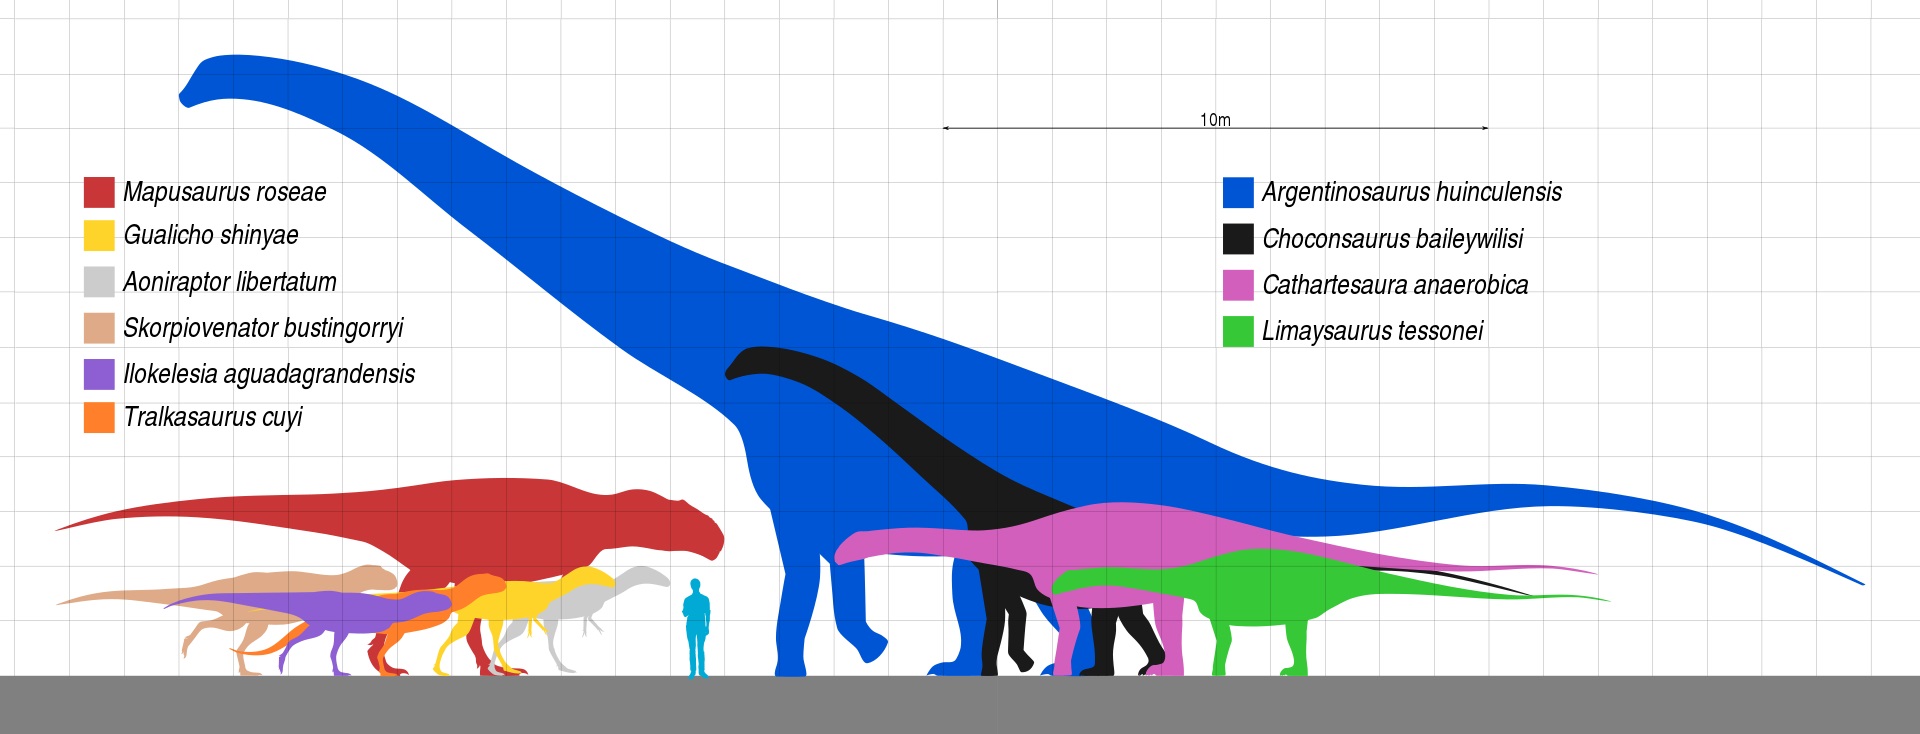 Velikostní porovnání dinosauří megafauny ze souvrství Huincul. Argentinosaurus huinculensis je zdaleka největším dinosaurem nejen v rámci ekosystémů tohoto souvrství, ale prozatím také největším známým suchozemským živočichem všech dob. Nejpřesnější 